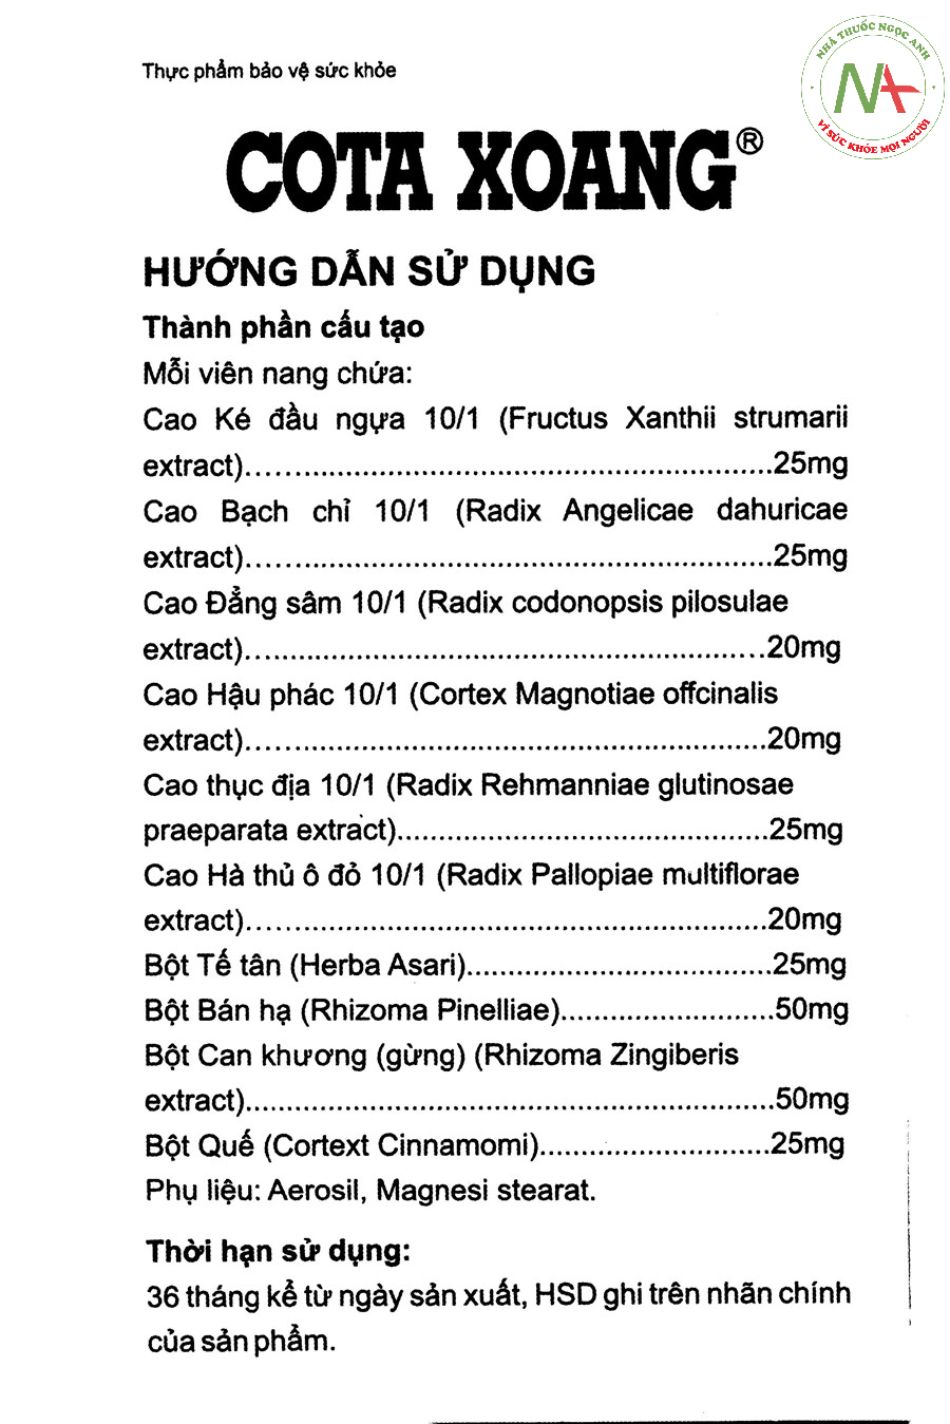 Tờ hướng dẫn sử dụng Cota Xoang Amepro Việt Nam